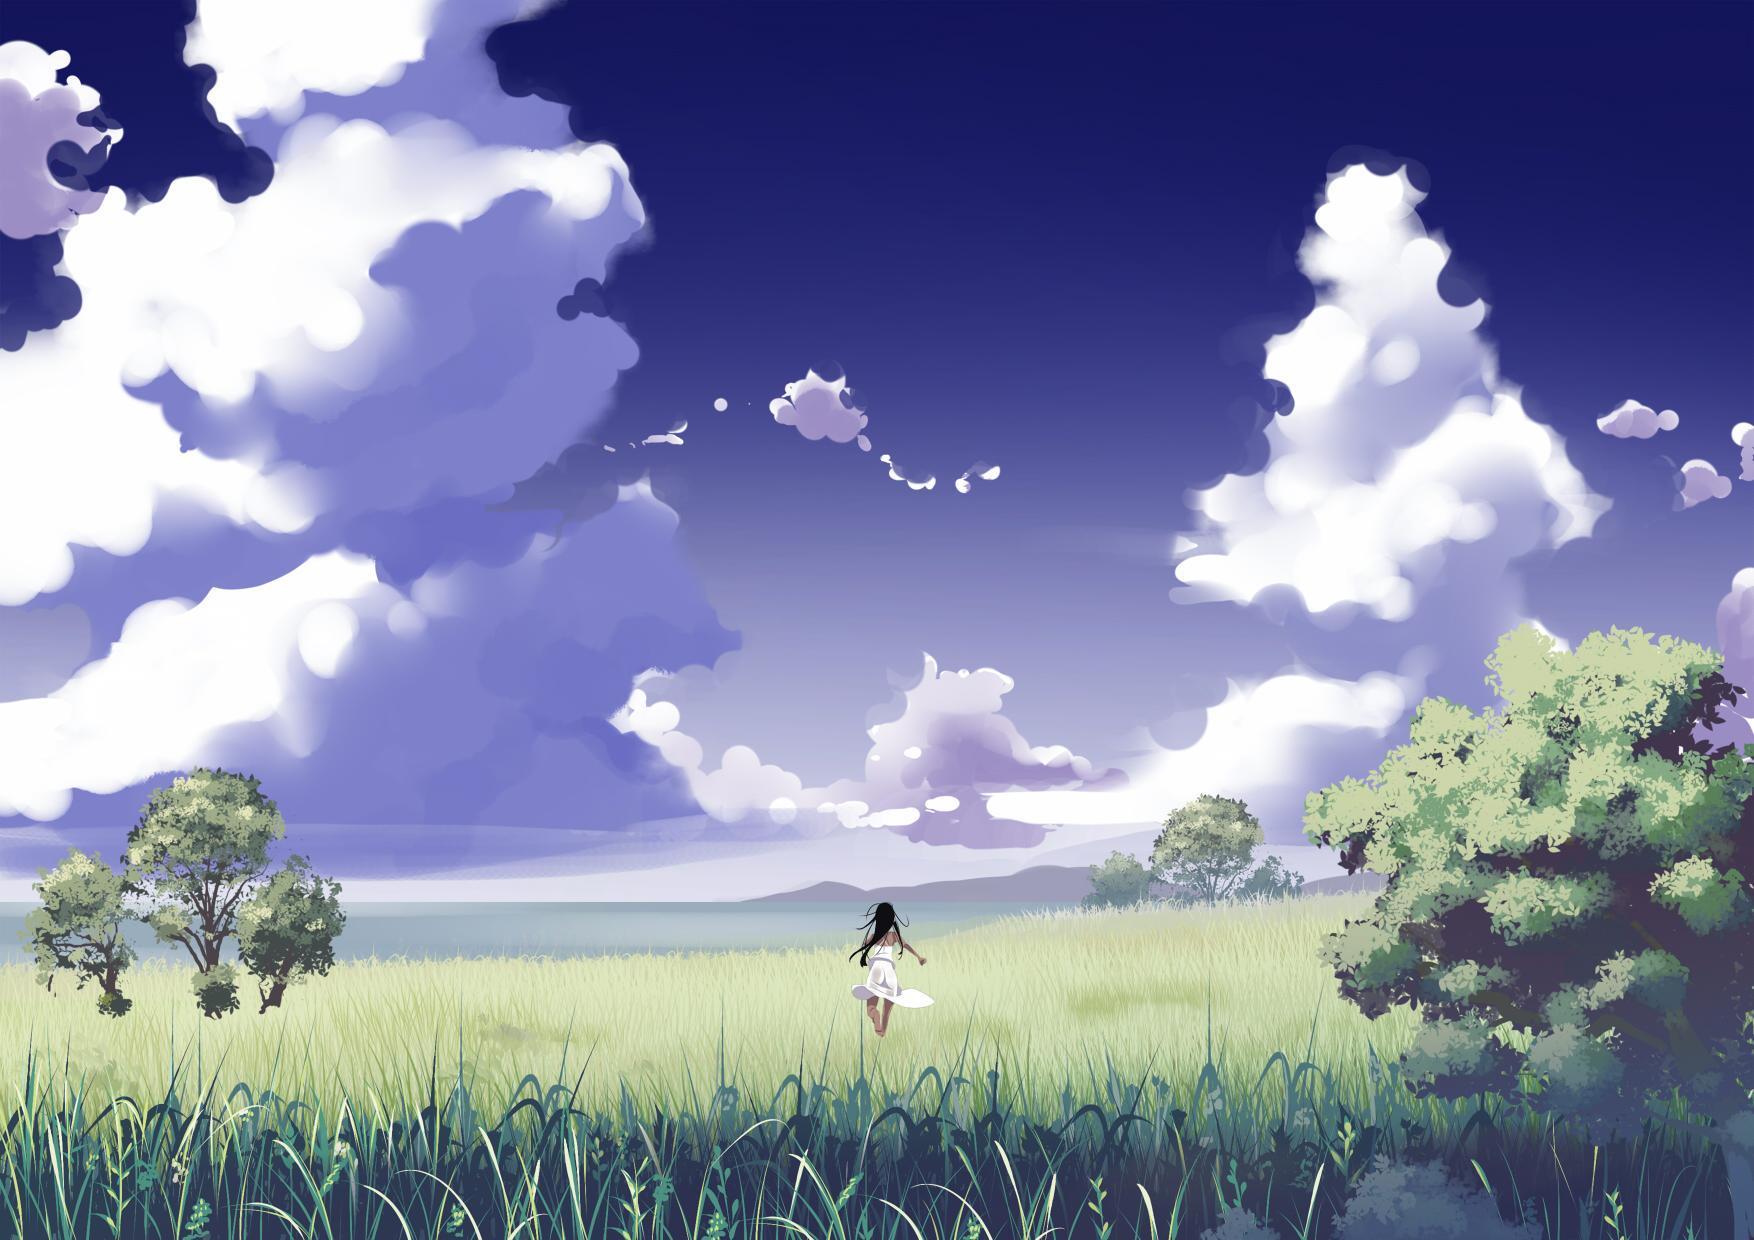 Hình ảnh anime chạy về phía bầy trời đầy gió